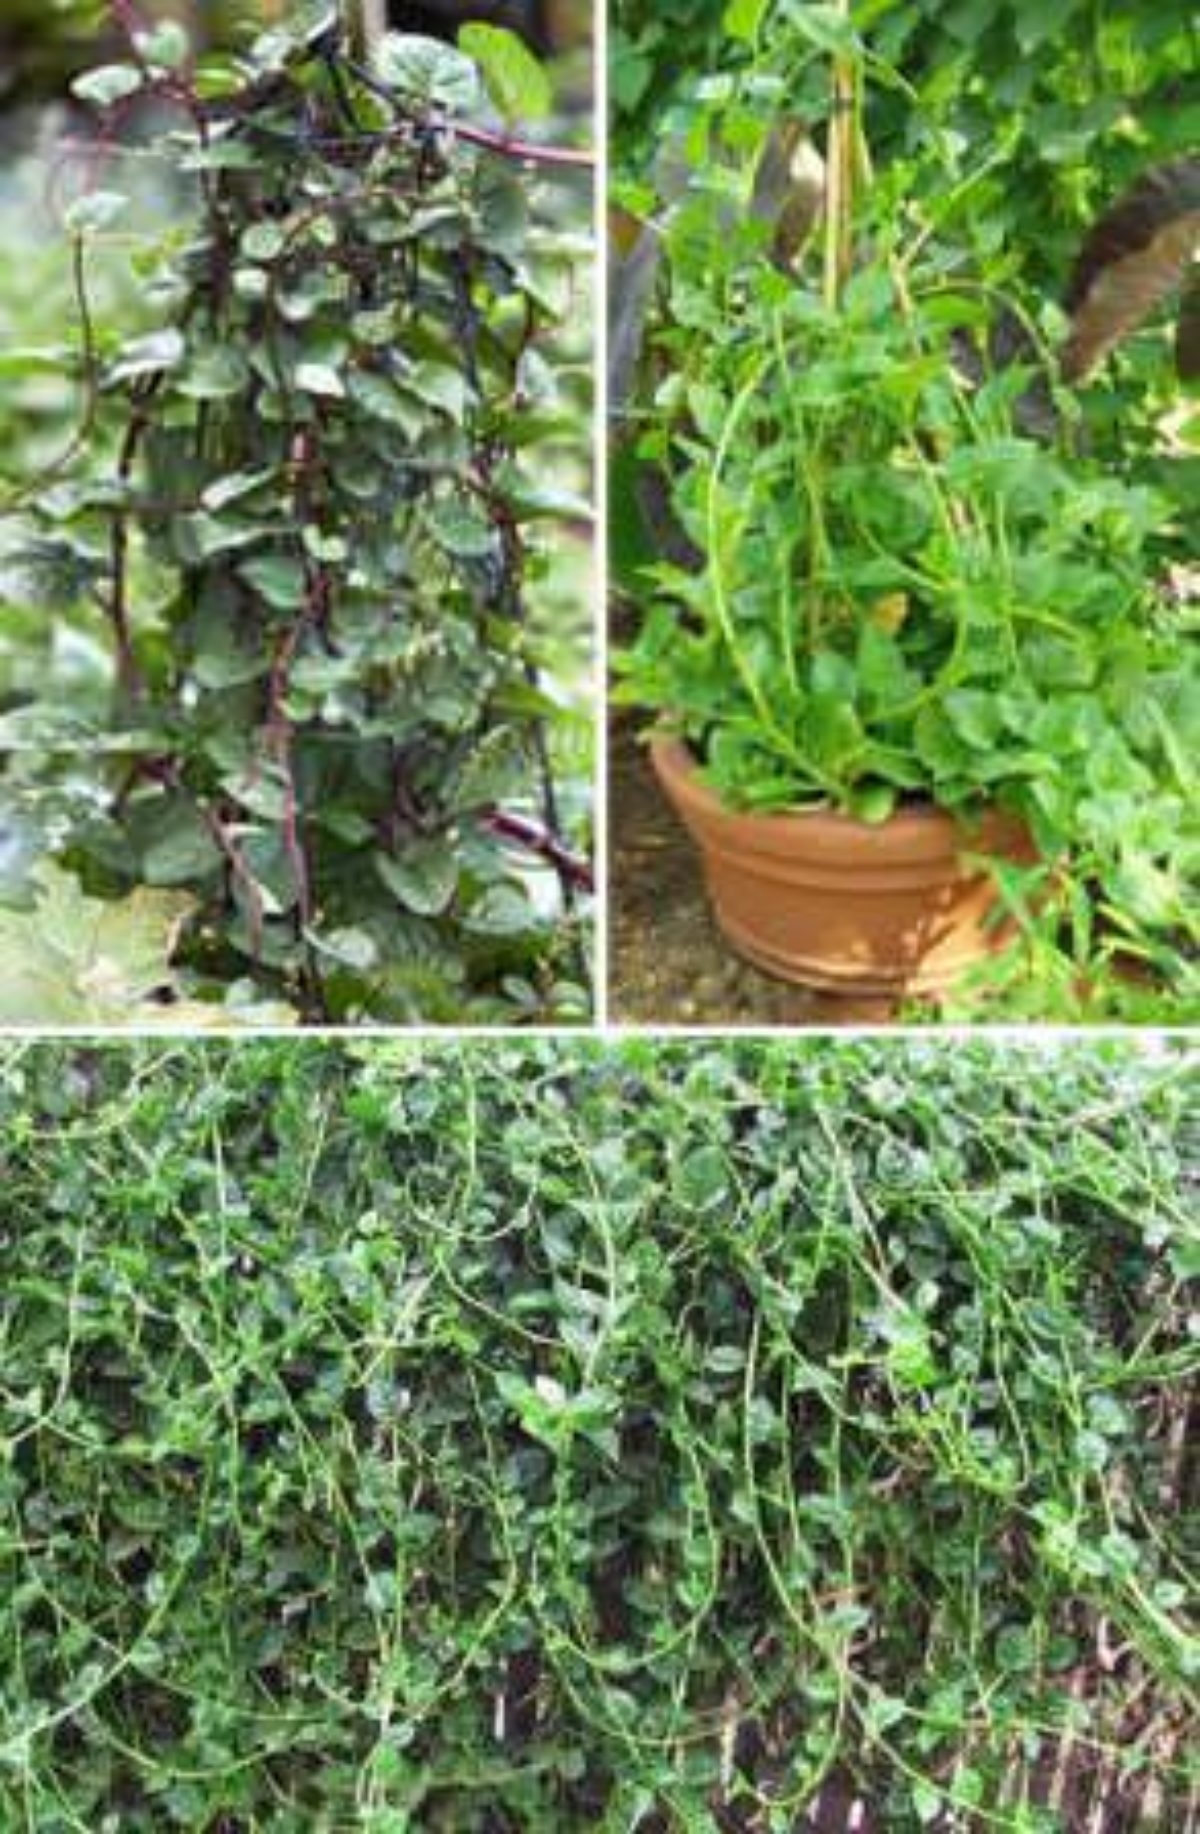 Базелла: описание растения, полезные свойства, применение, как правильно выращивать, размножать